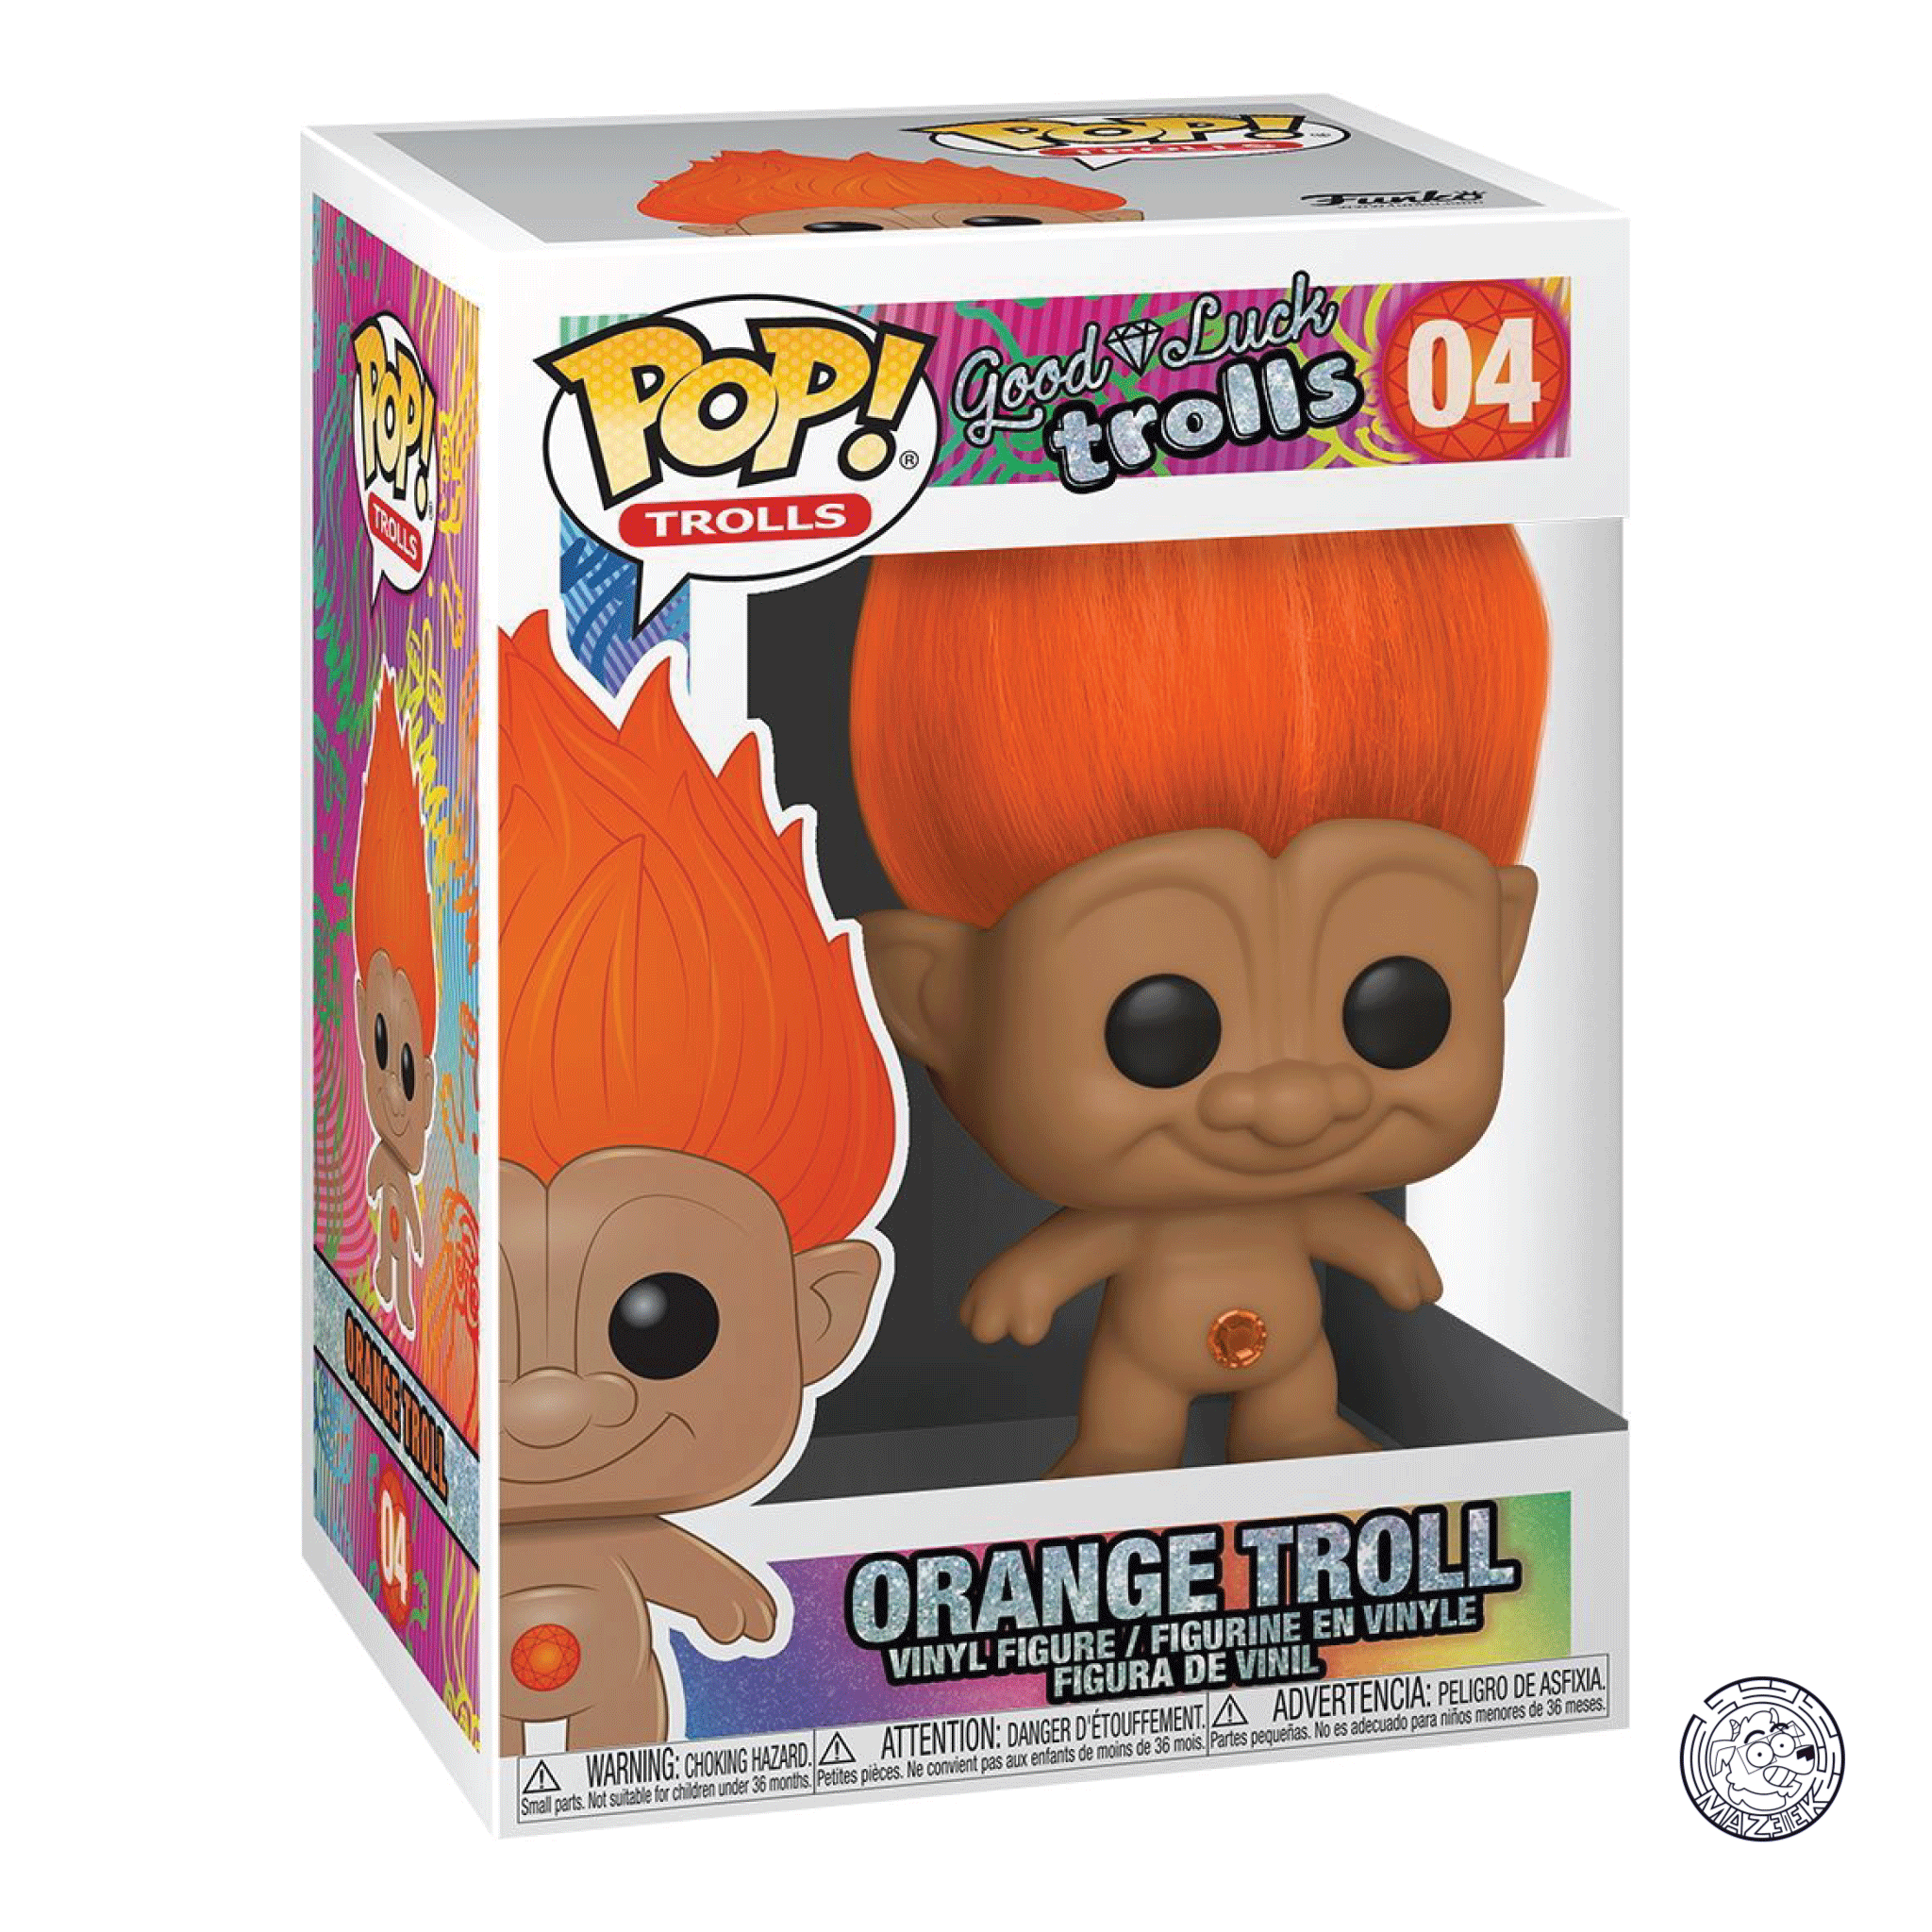 Funko POP! Good Luck Trolls: Orange Troll 04